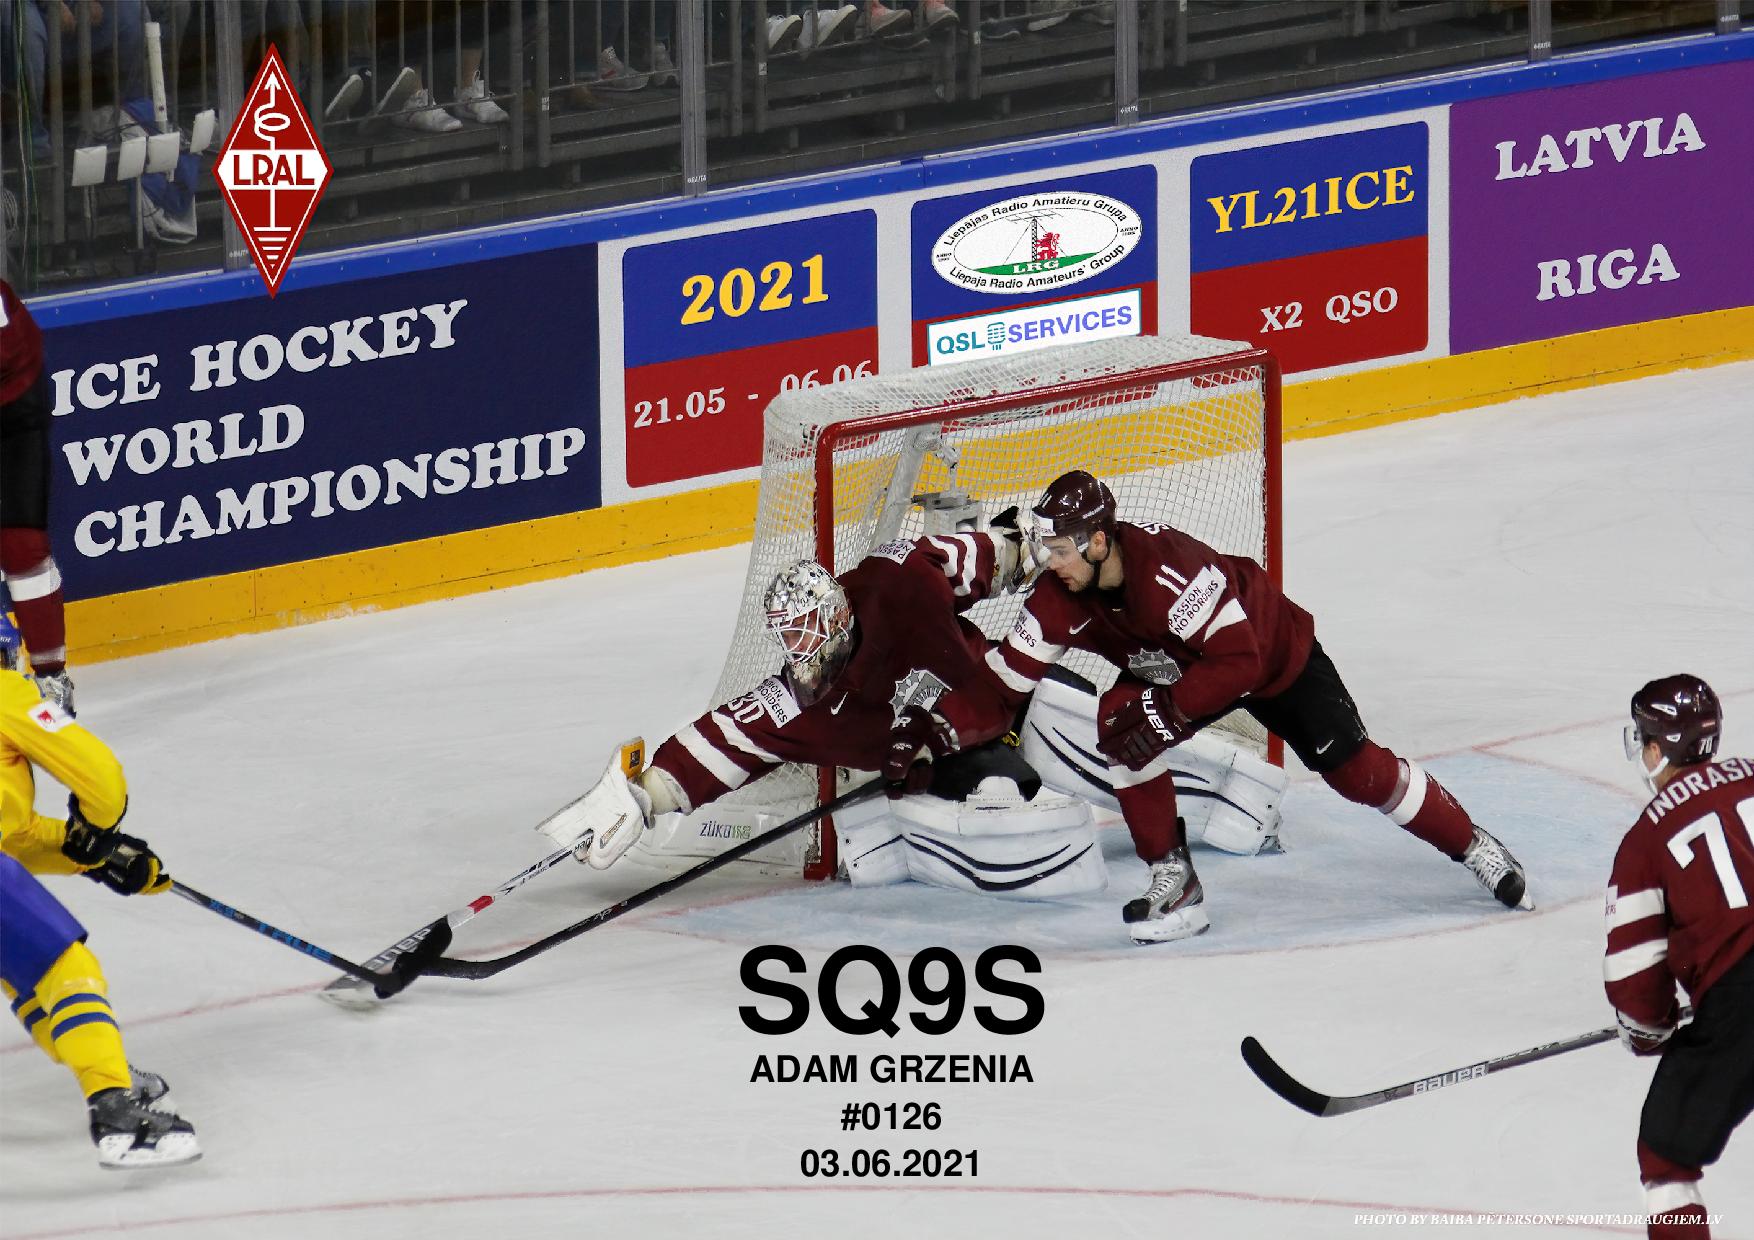 Ice Hockey World Championships 2021 SQ9S Adam